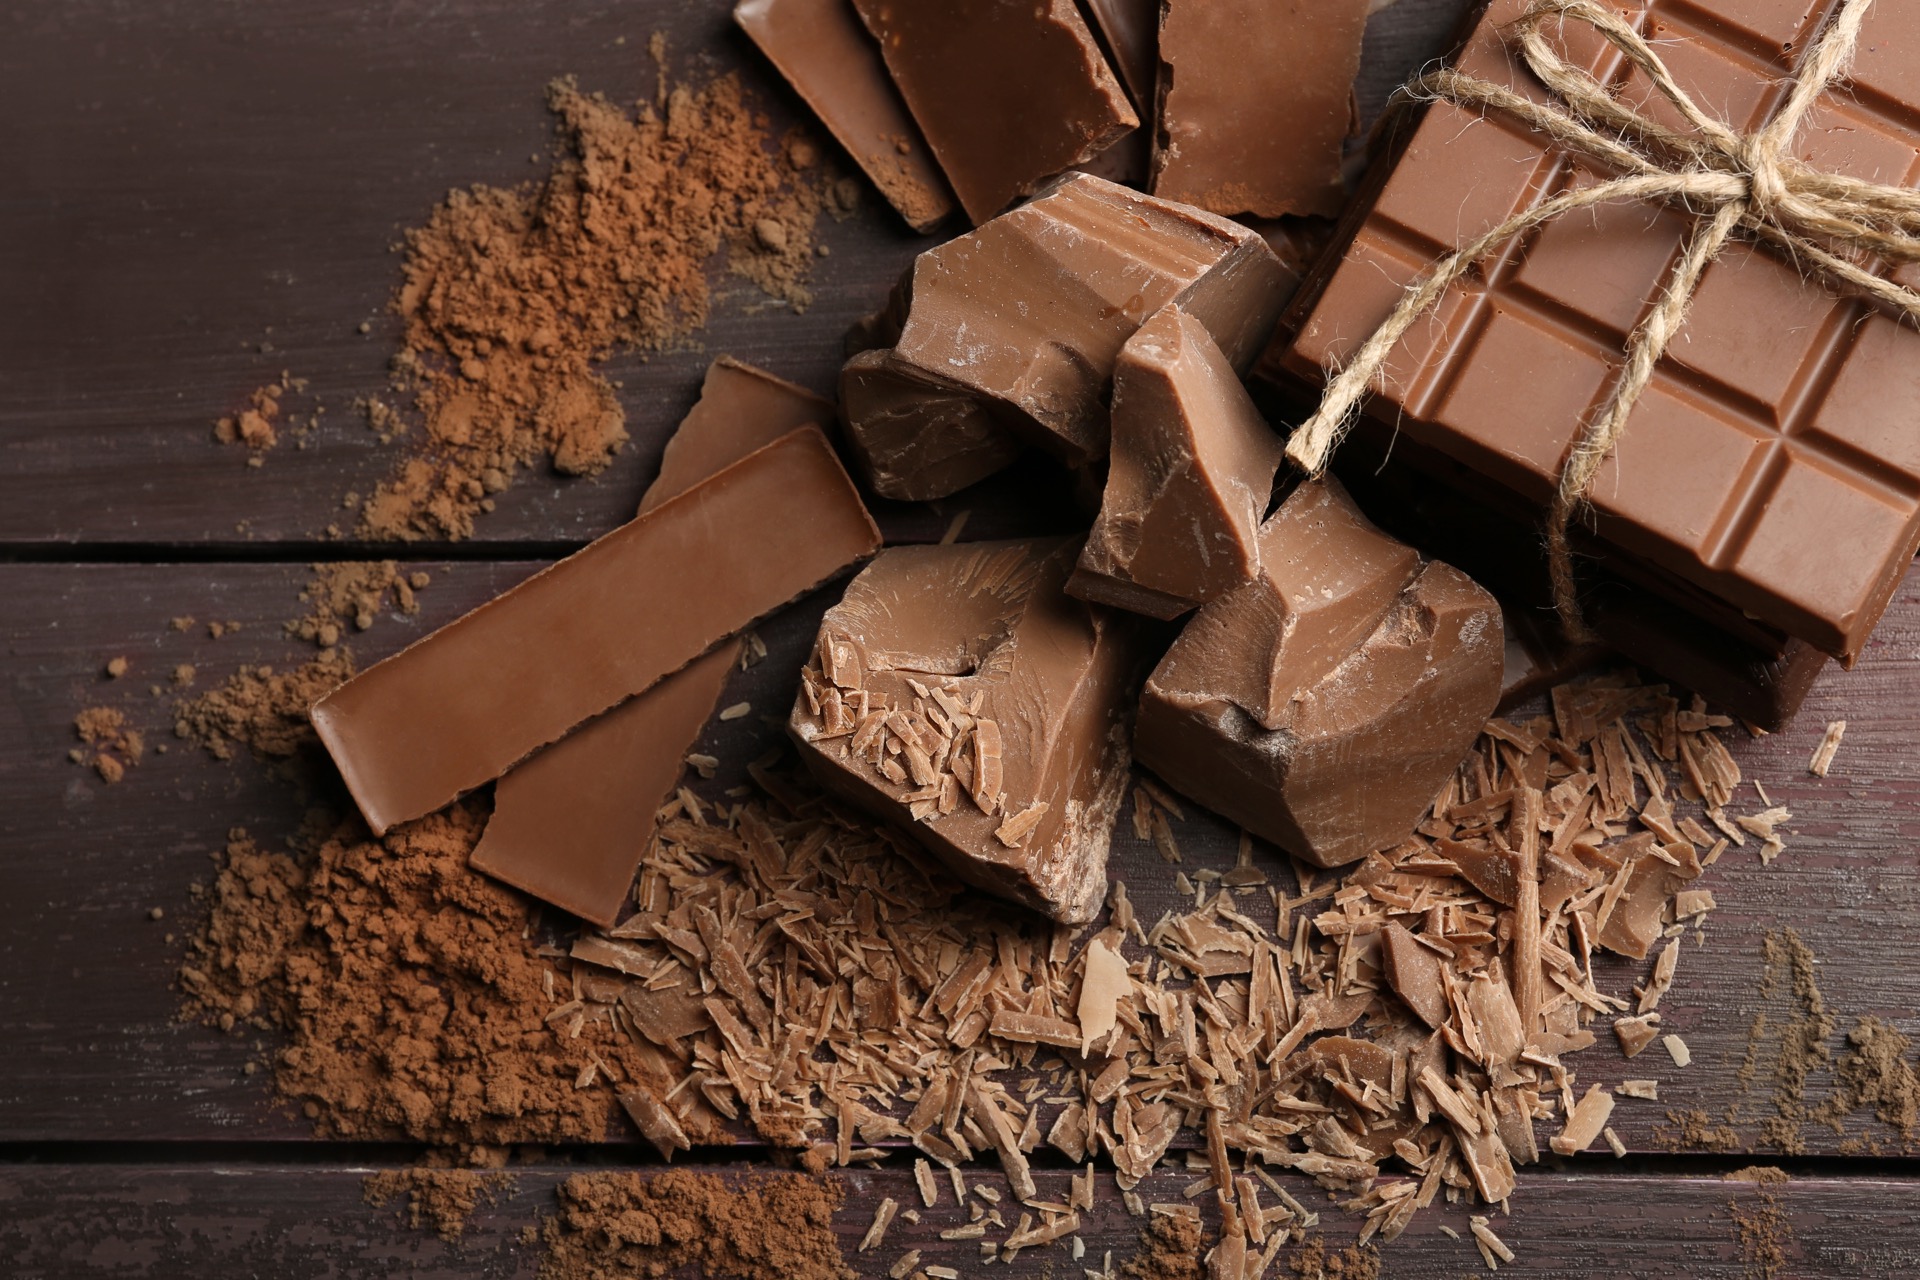 Des chercheurs ont imaginé un chocolat au lait plus riche en nutriments grâce aux déchets alimentaires et notamment ceux de l'arachide. © Africa Studio, Adobe Stock